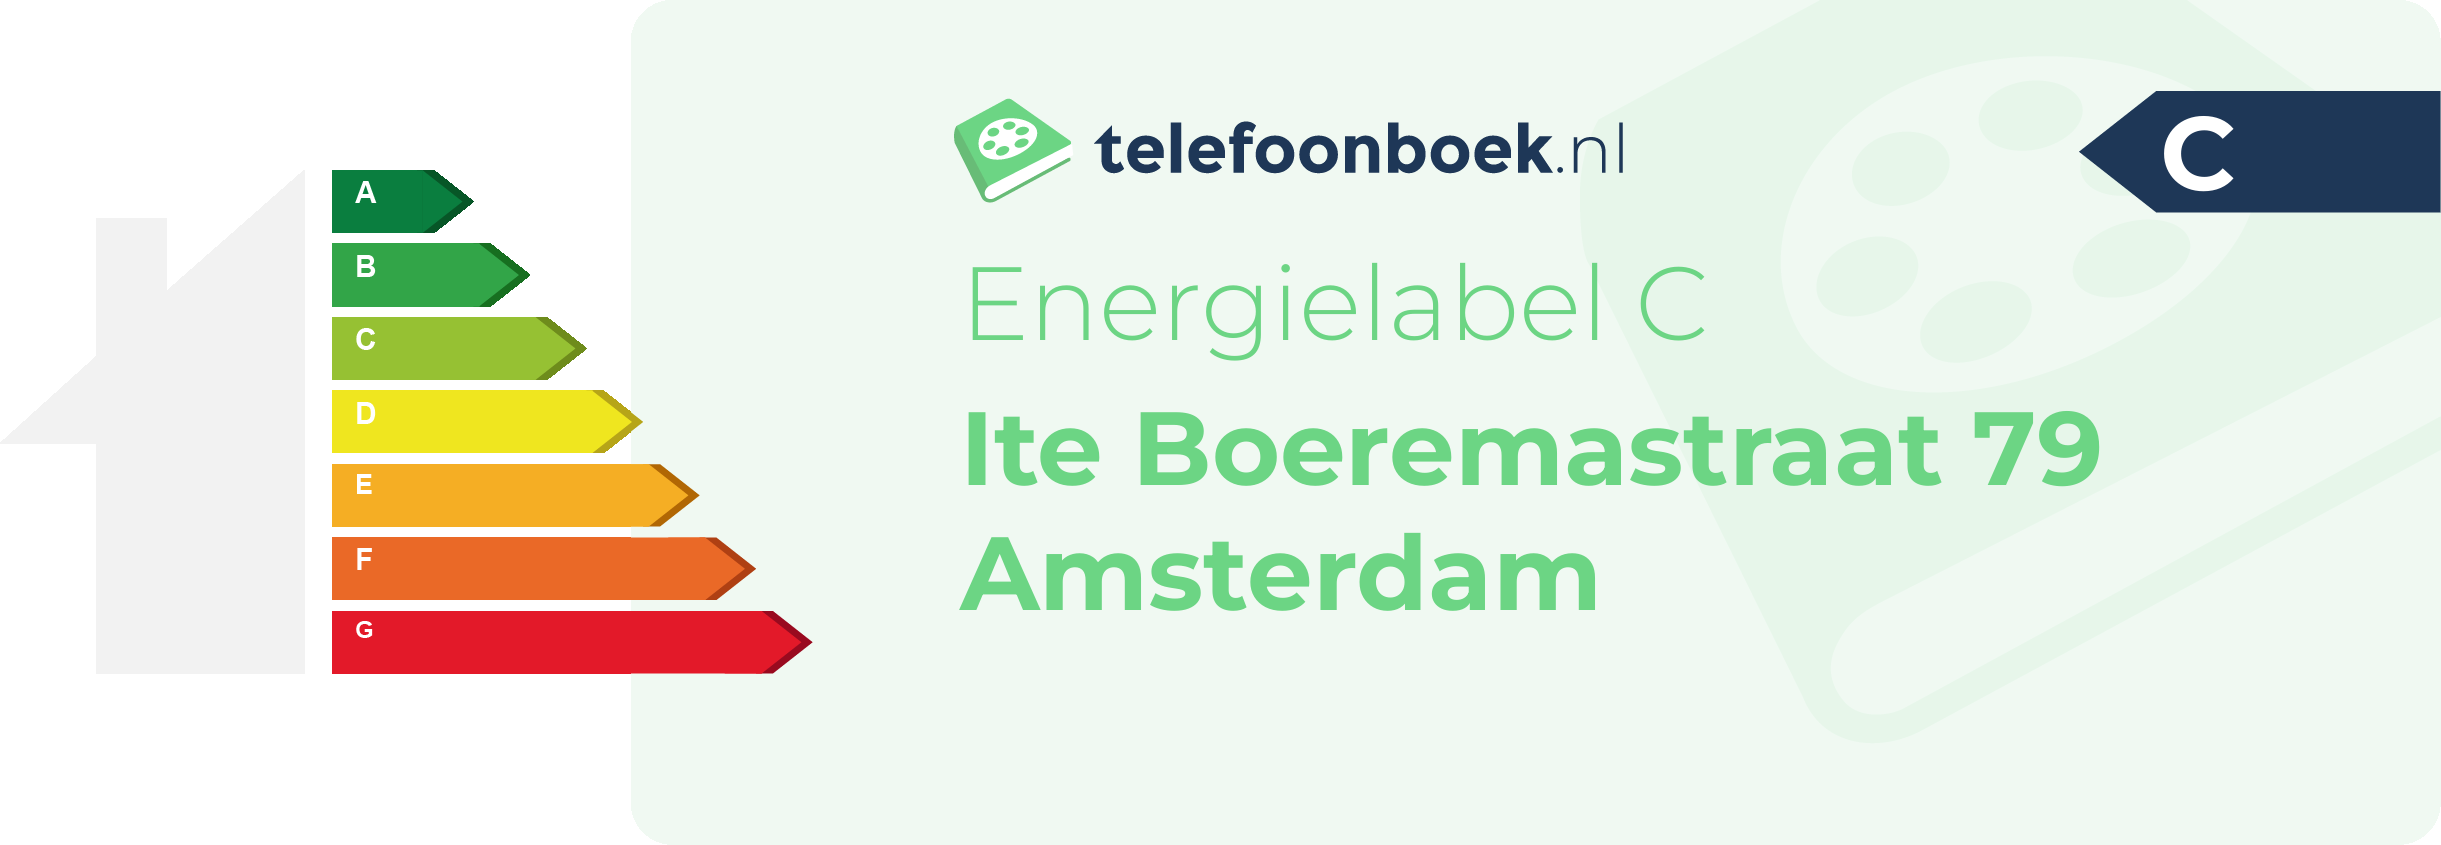 Energielabel Ite Boeremastraat 79 Amsterdam